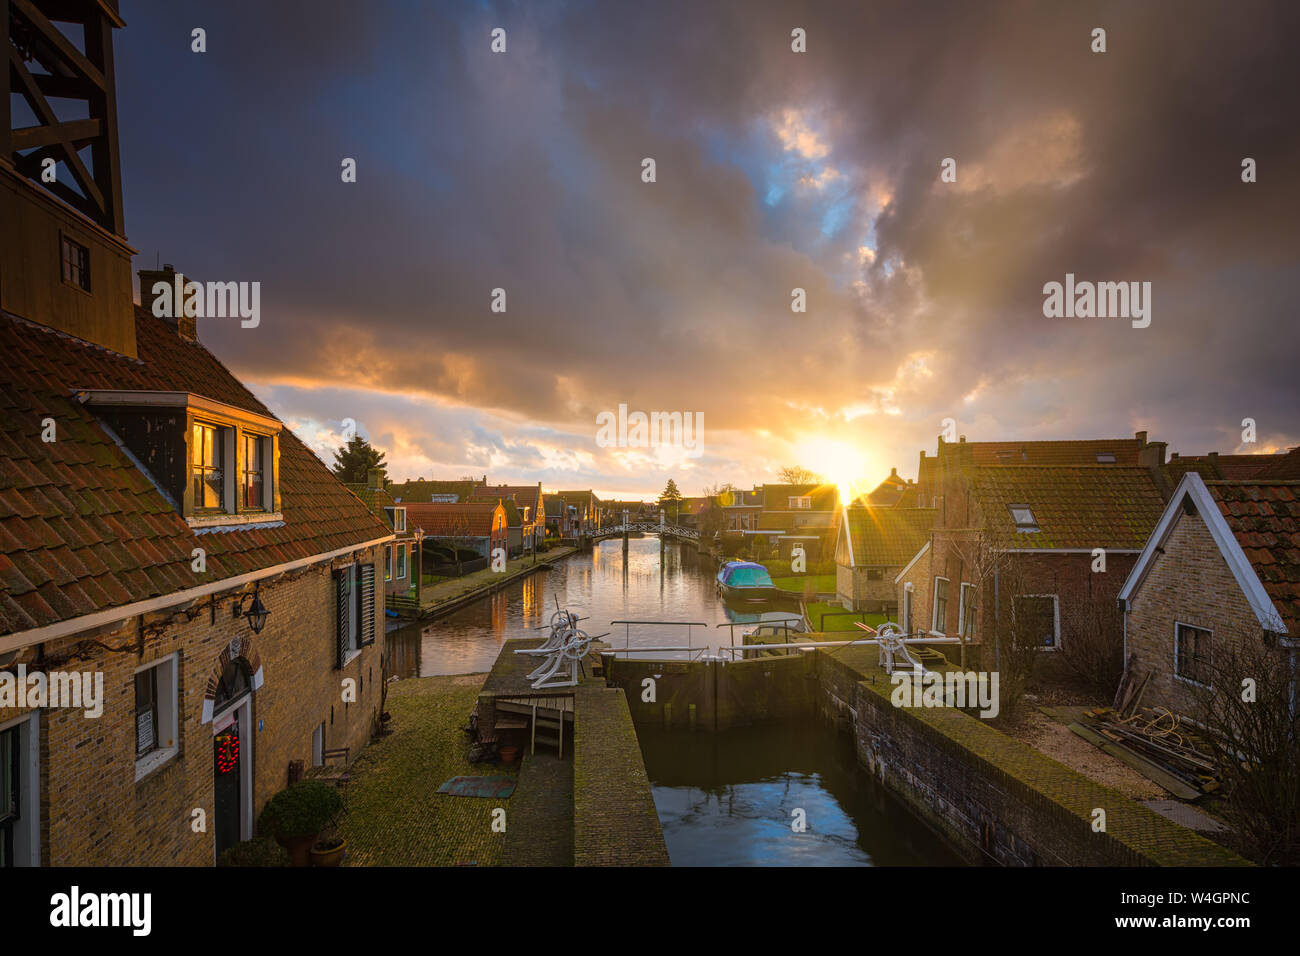 Una ciudad histórica y popular destino turístico en los Países Bajos en el IJsselmeer, con casas antiguas y canales - Hindeloopen, Países Bajos Foto de stock